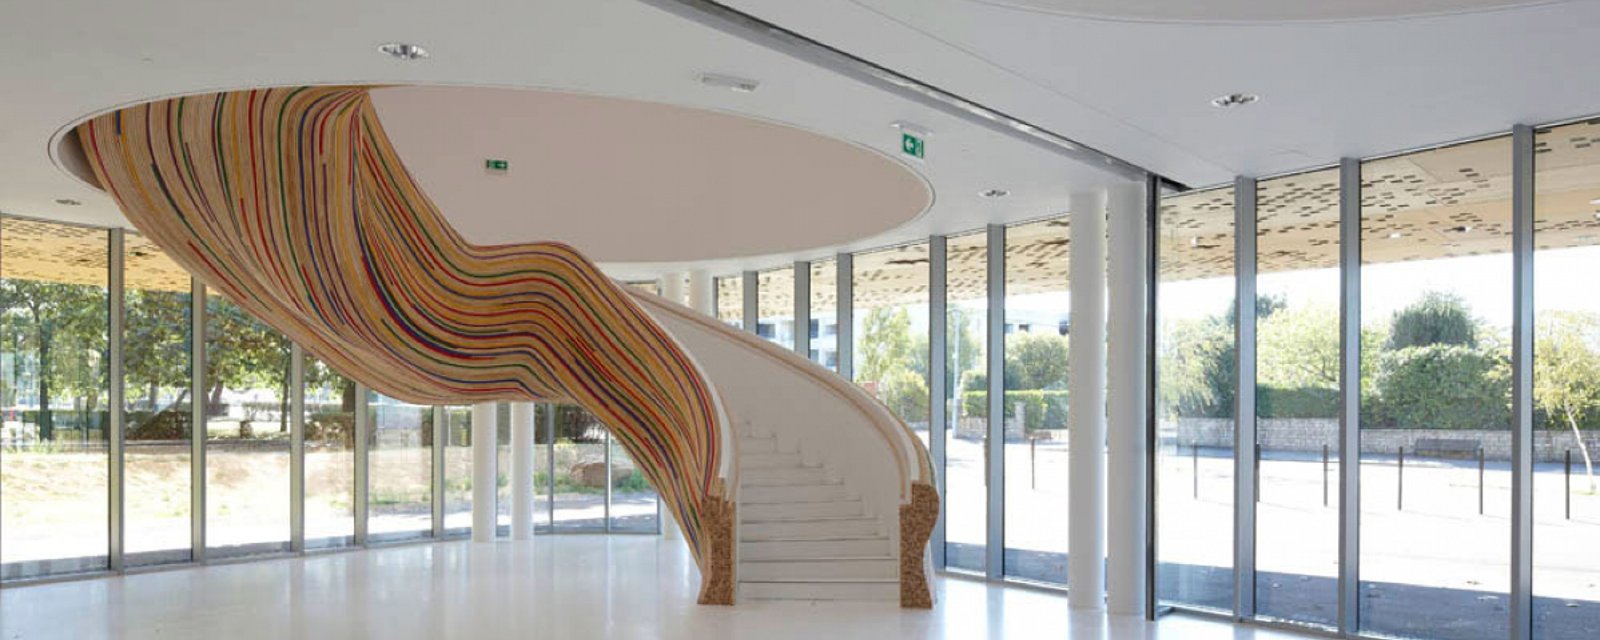 15 escaliers Design qui vous donneront des idées de grandeur! 